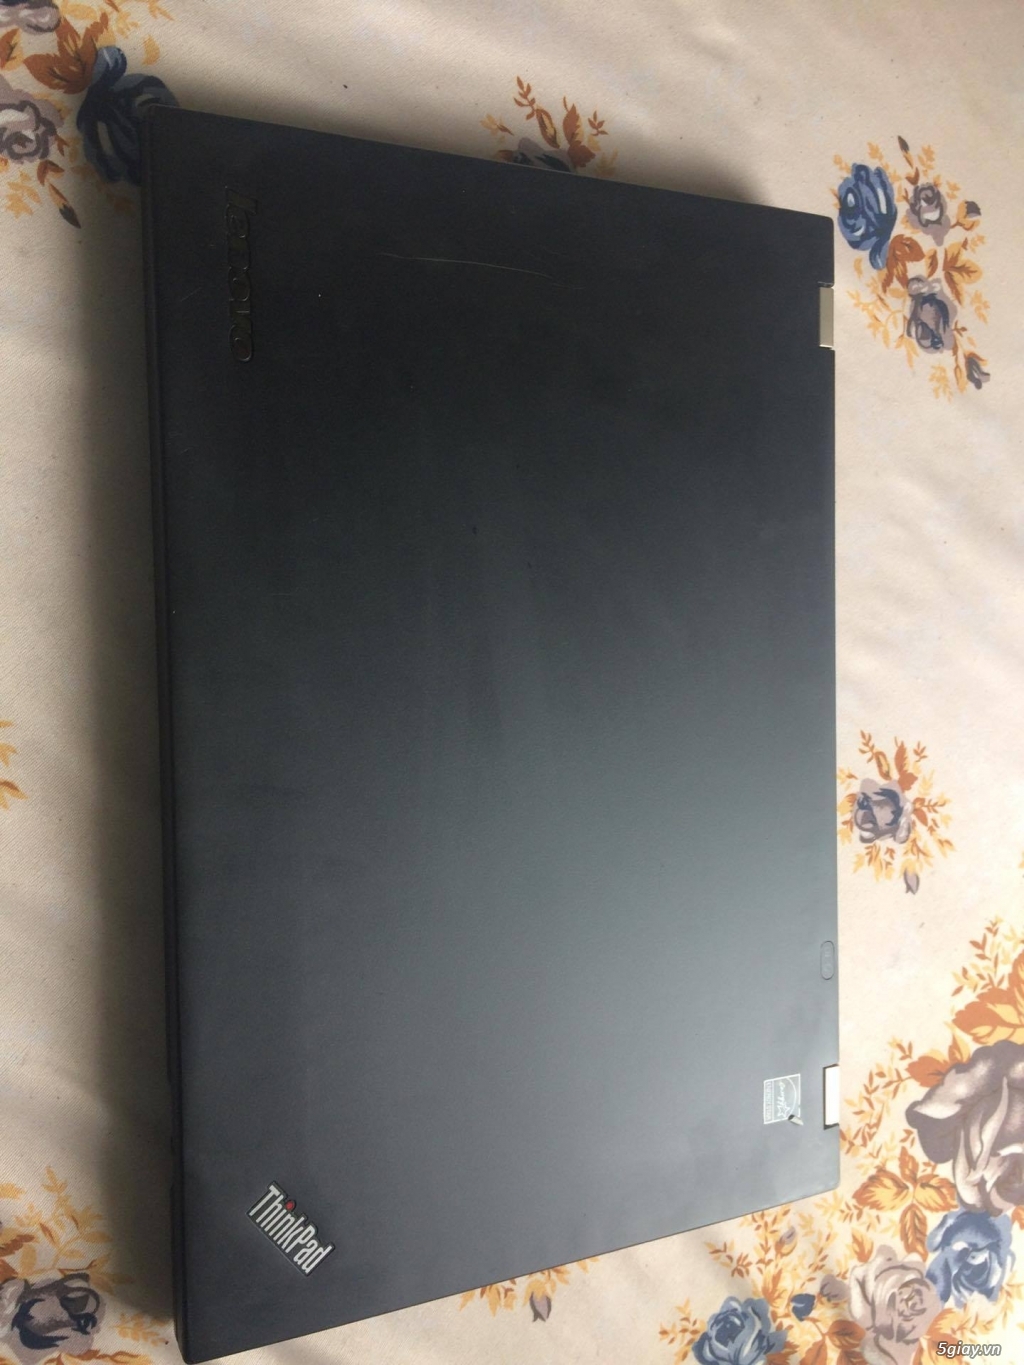 laptop lenovo t430s core i5 ram 4g hdd vga - 4